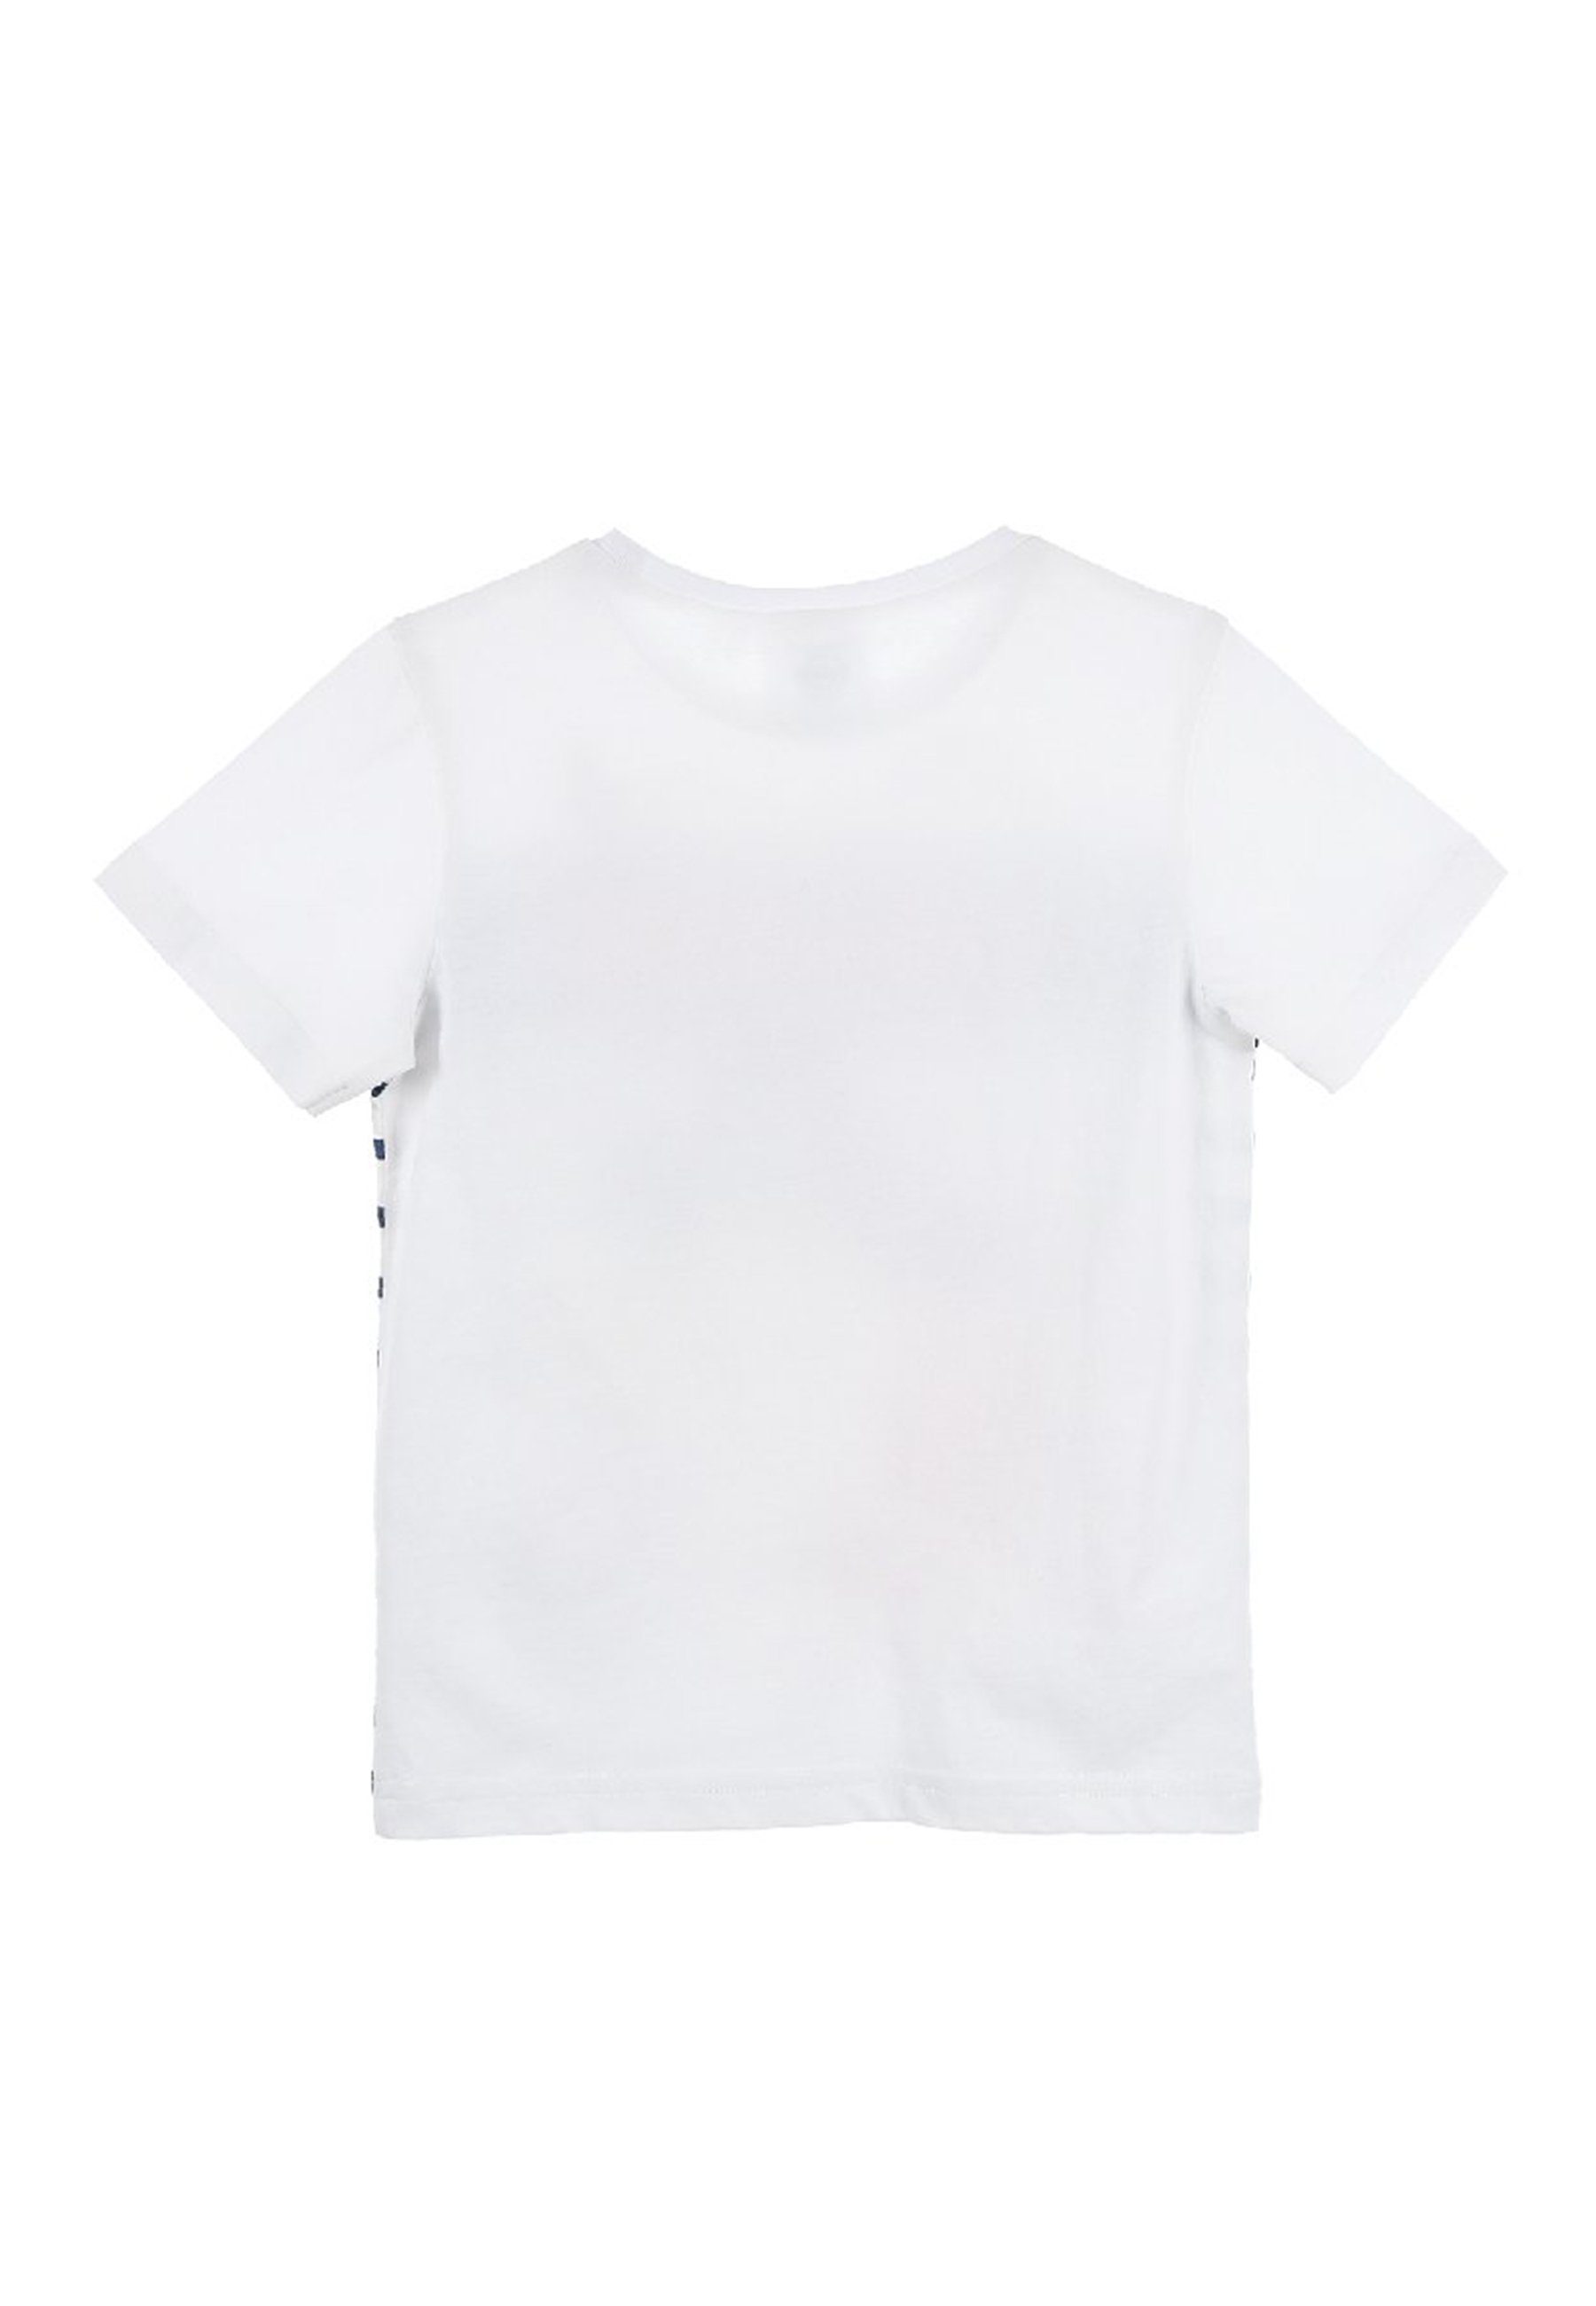 Inspiration Bekleidung PAW PATROL T-Shirt Marshall Kinder Jungen kurzarm-Shirt Oberteil gestreift